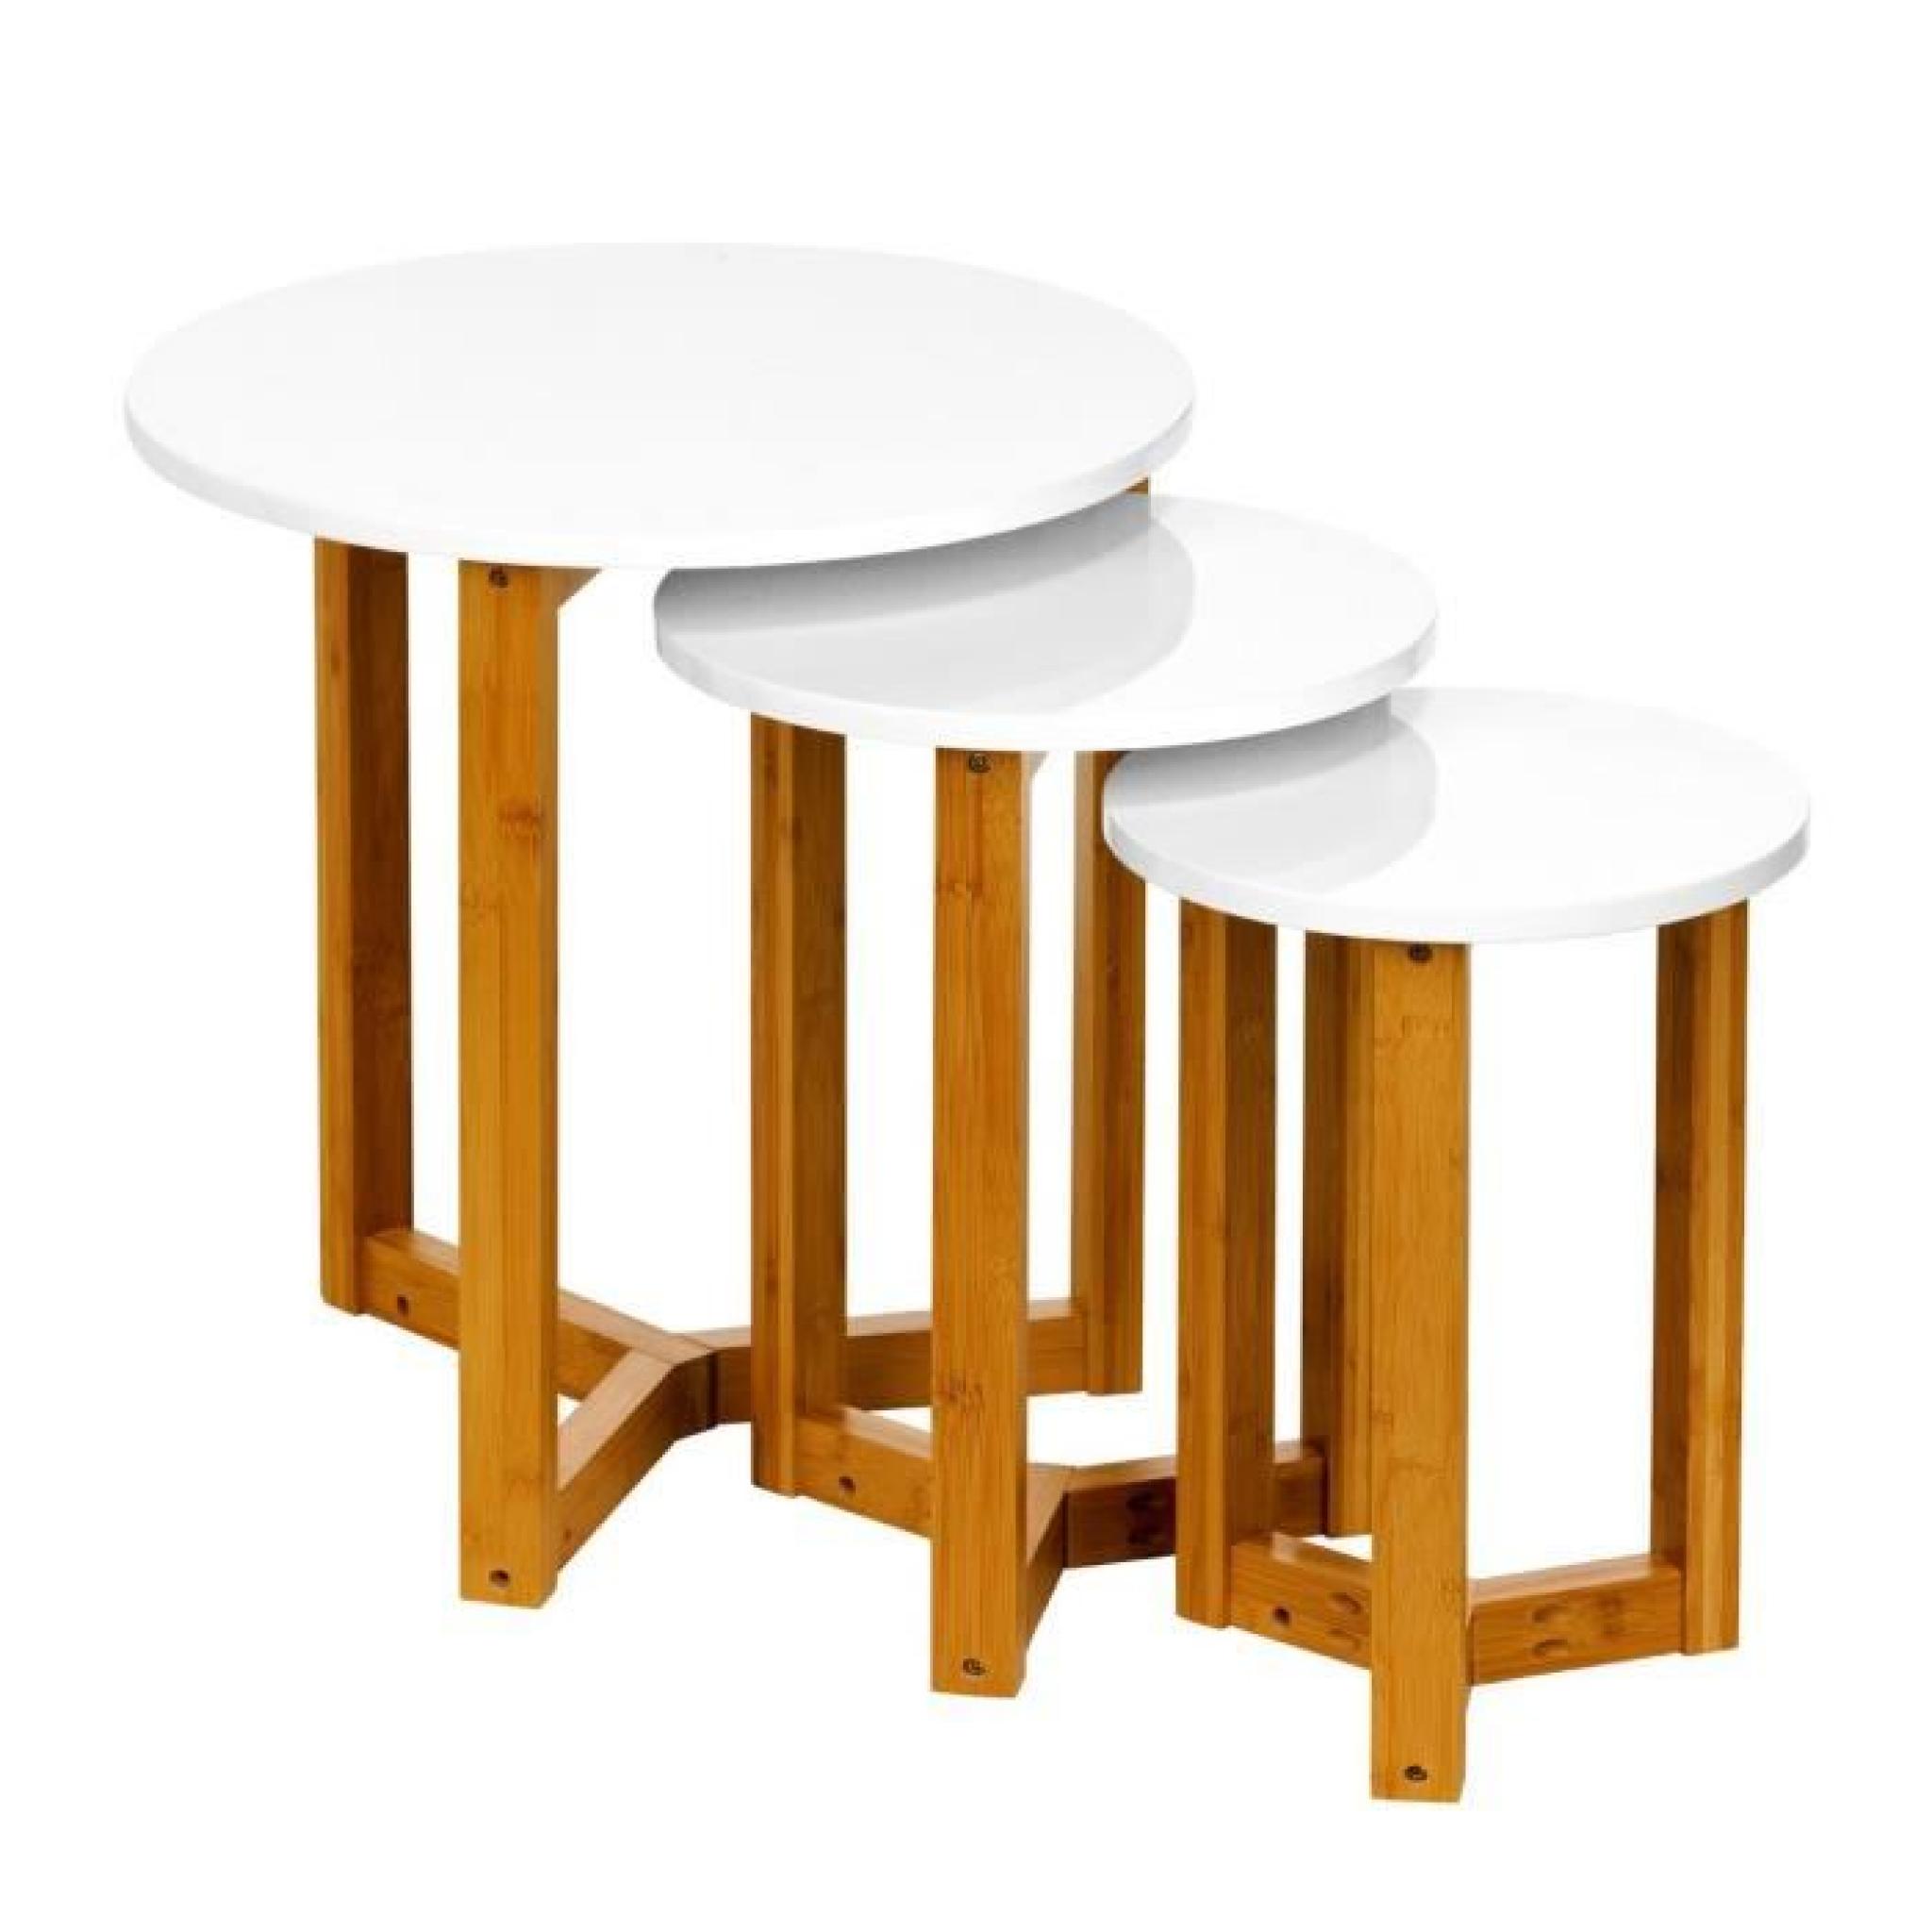 Lot de 3 Tables gigognes rondes MDF blanches très brillantes, pieds en bambou